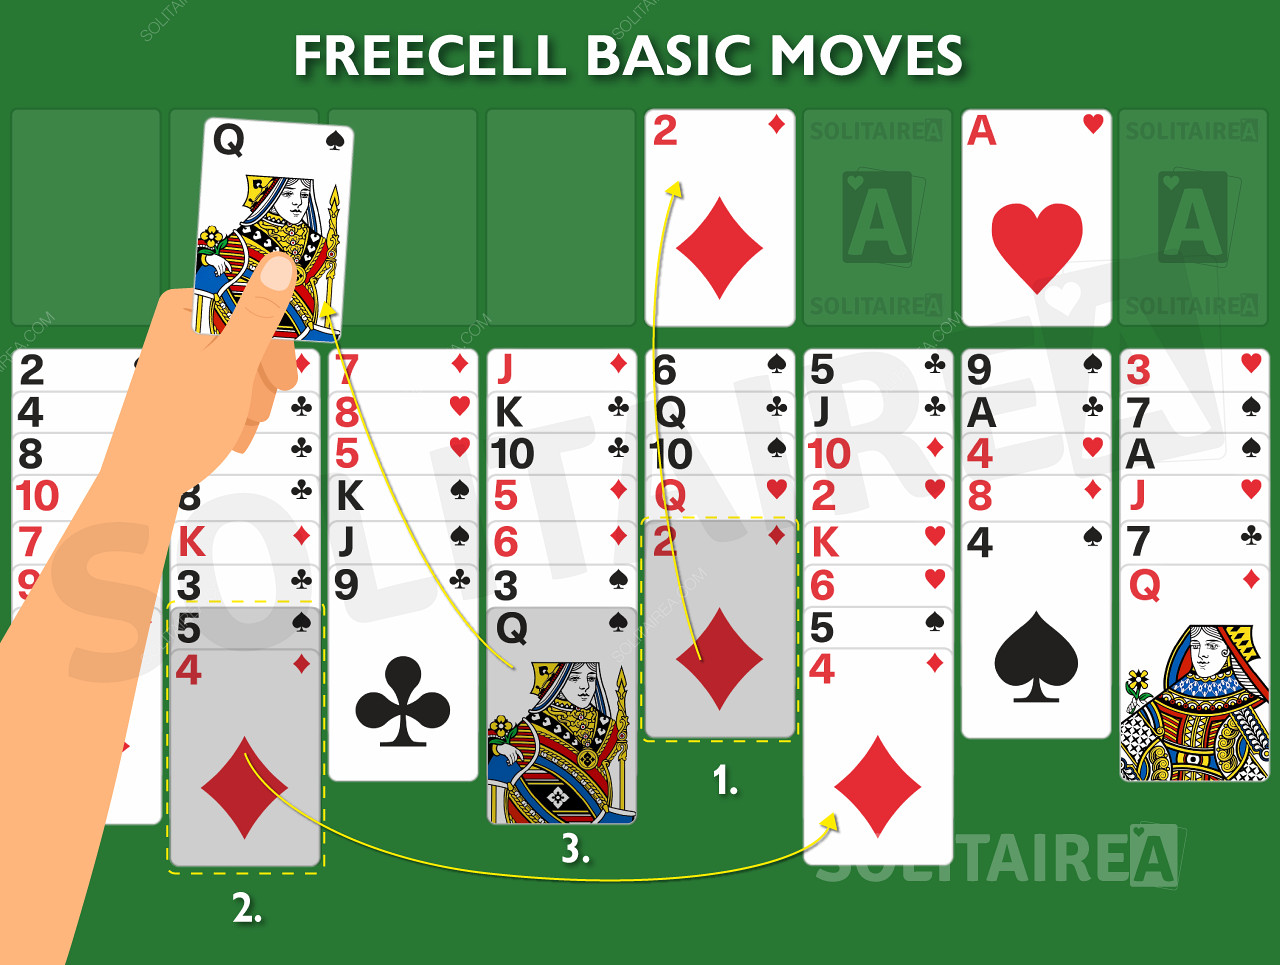 Imagen del juego que muestra las reglas básicas en acción